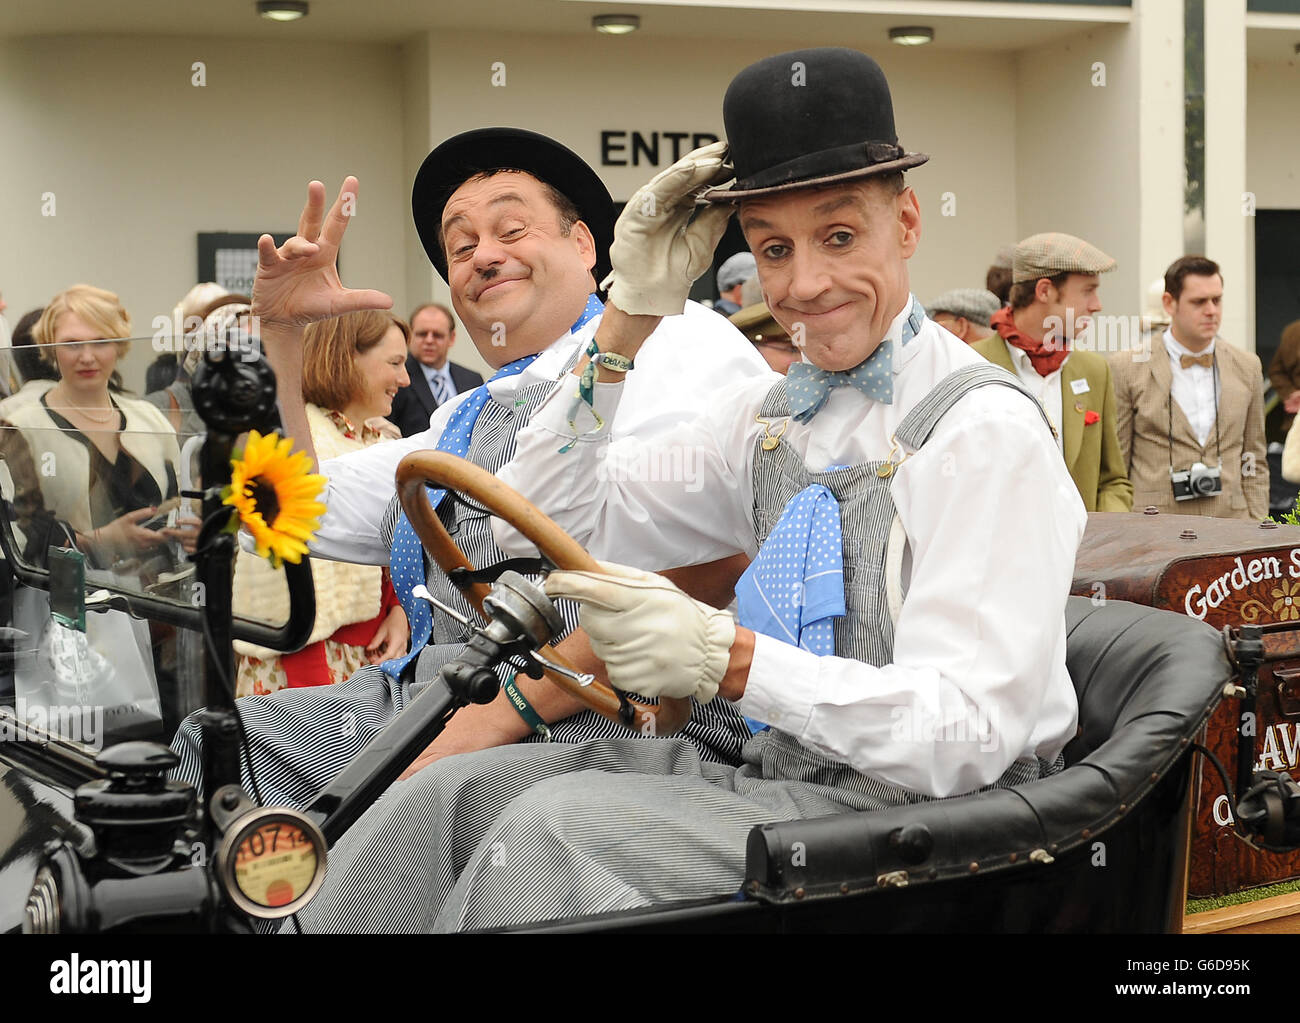 Wiederbelebung Von Goodwood. Zwei Schauspieler, die Laurel und Hardy spielen, unterhalten das Publikum beim Goodwood Revival. Stockfoto